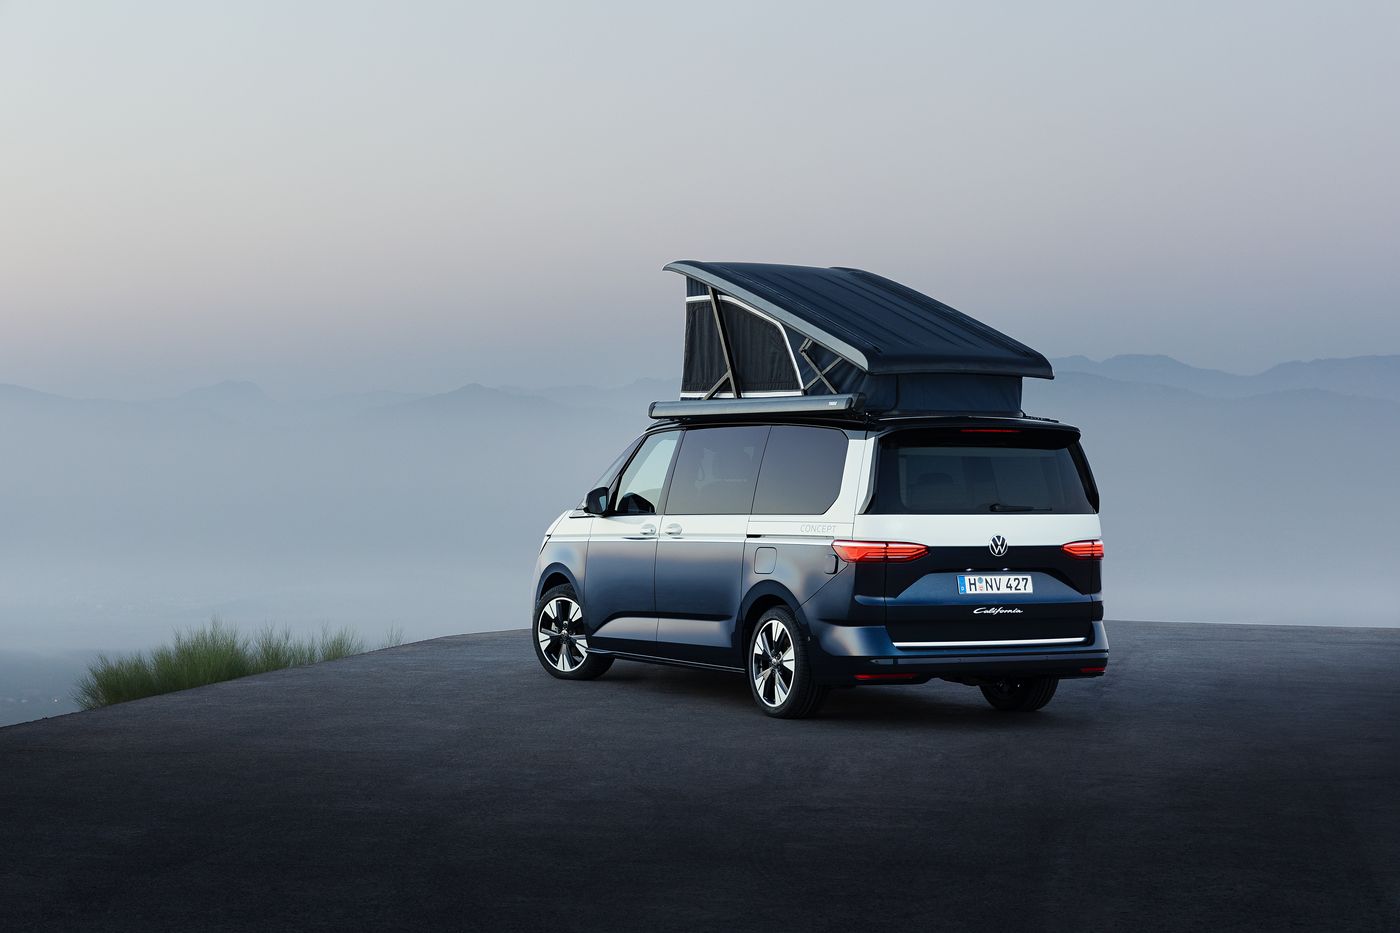 La próxima Volkswagen California será híbrida enchufable y además contará con más equipamiento y versatilidad